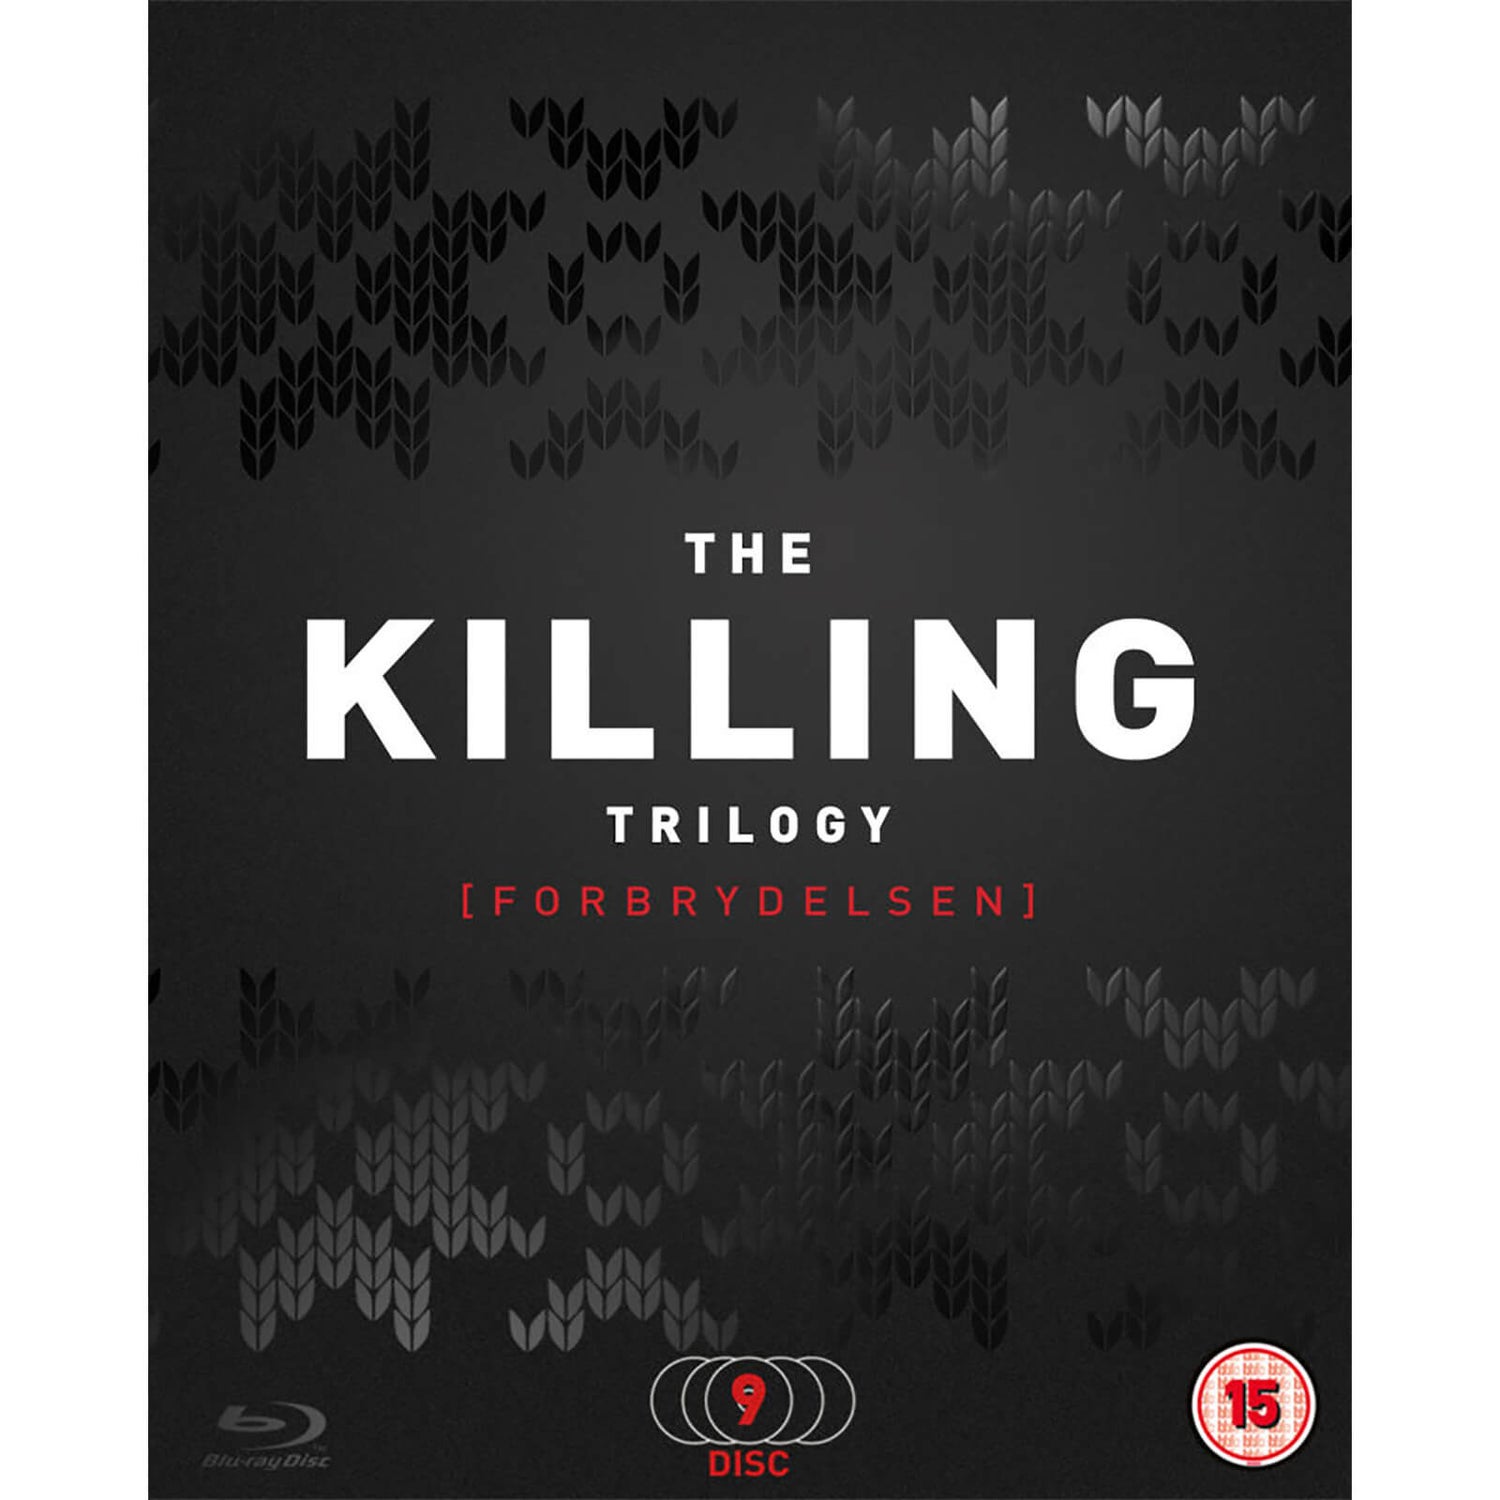 The Killing 1-3 Box Set